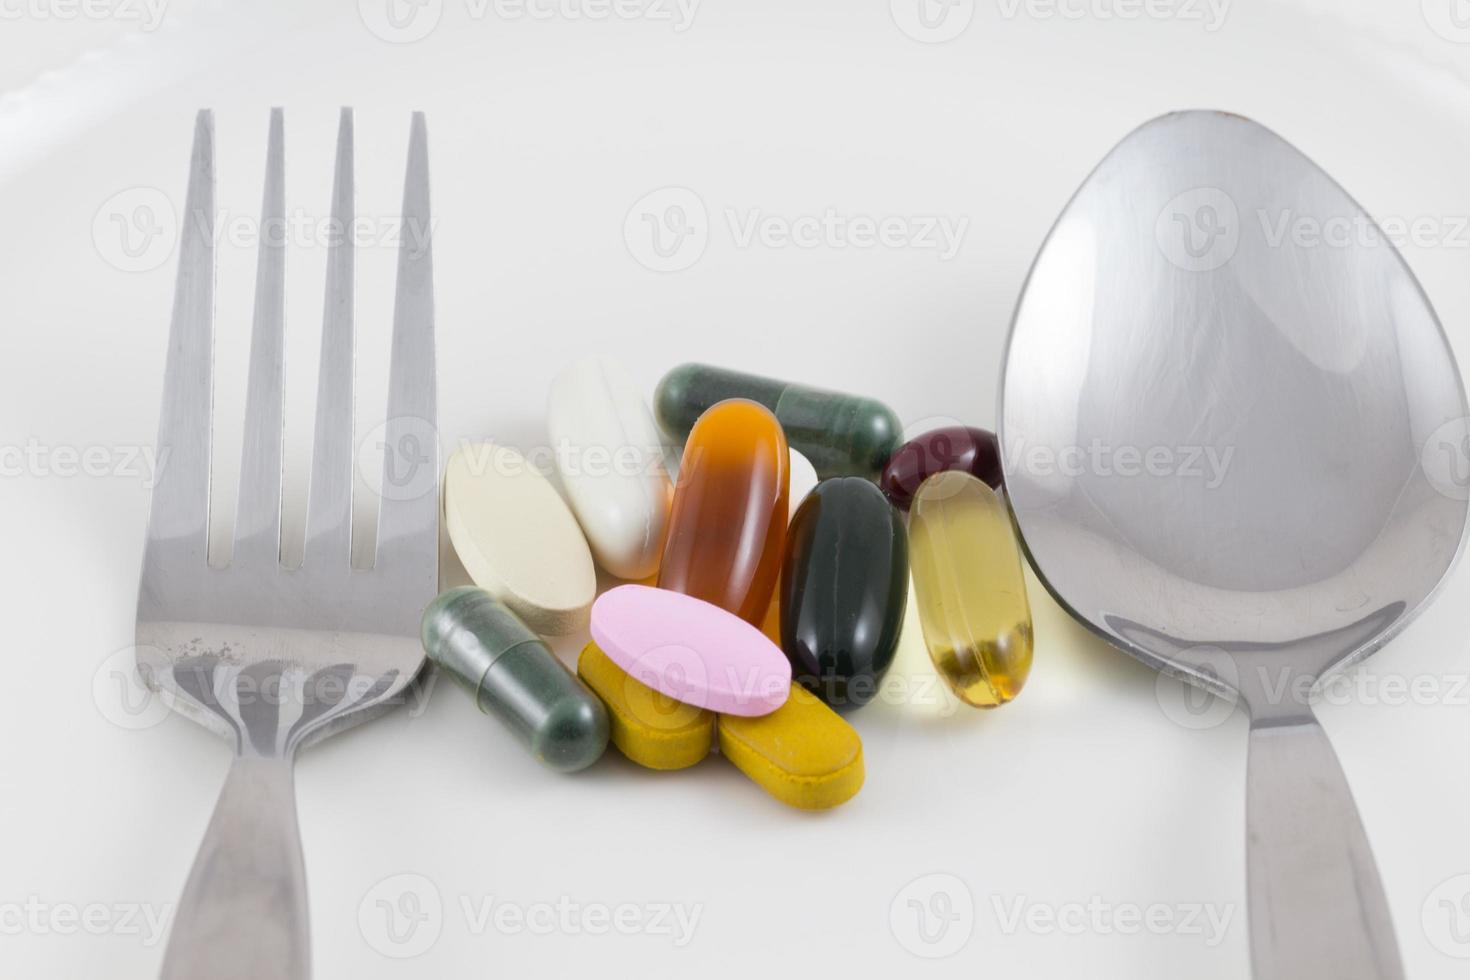 meerdere drug pillen op een bord met een lepel en vork foto